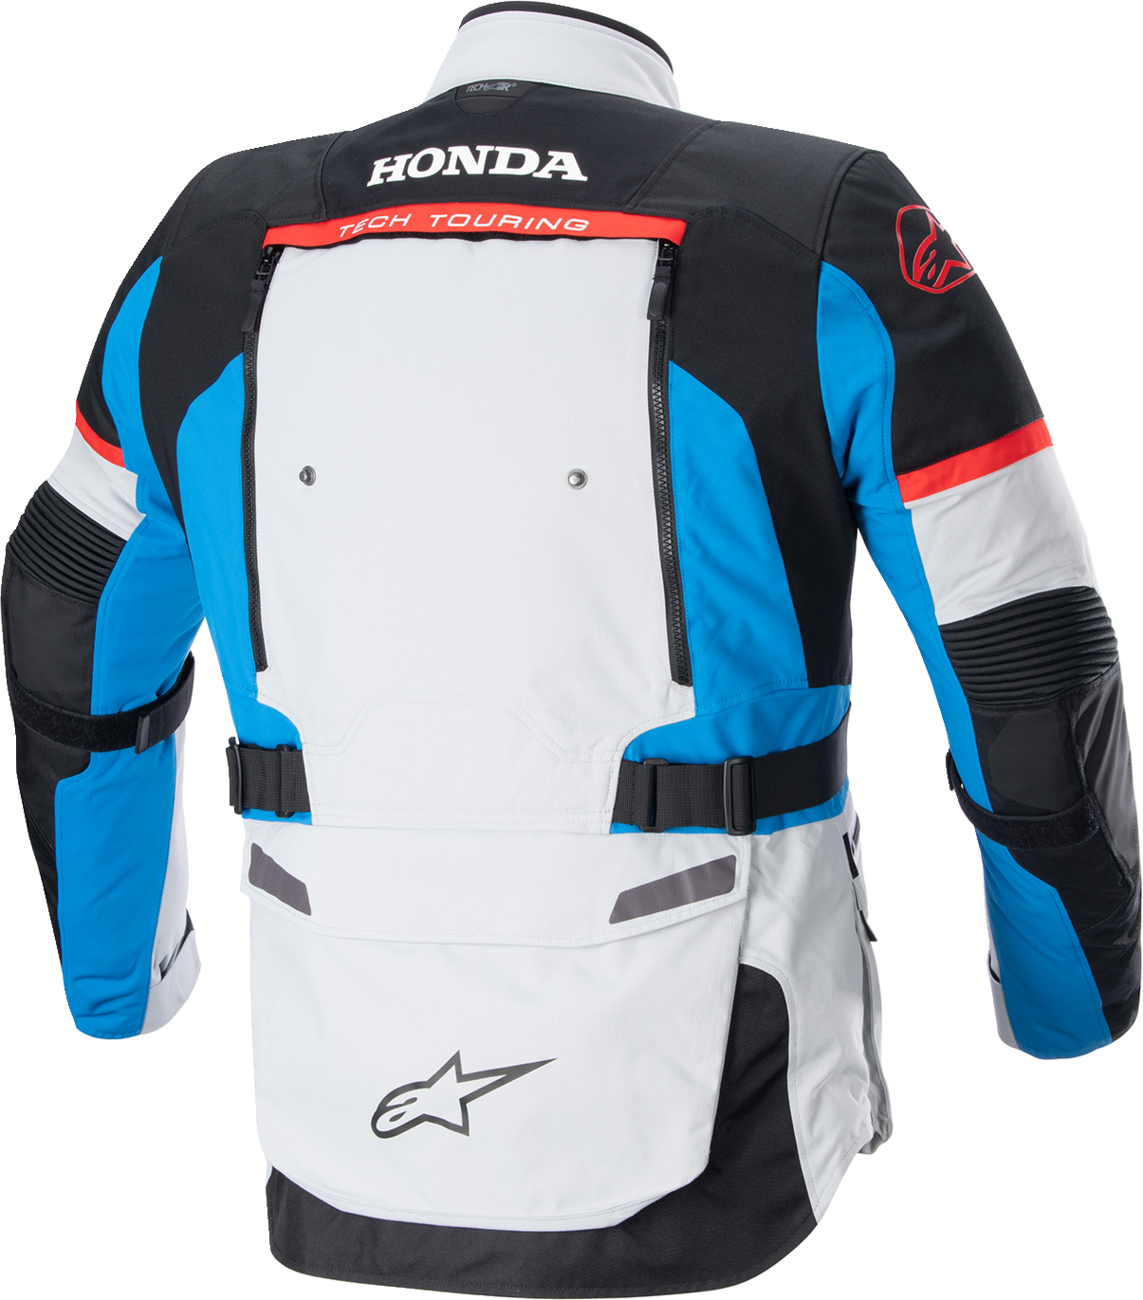 ALPINESTARS Honda Bogotà Pro Drystar® Jacket - Gray/Black/Red/Blue - Small 3206723-9173-S